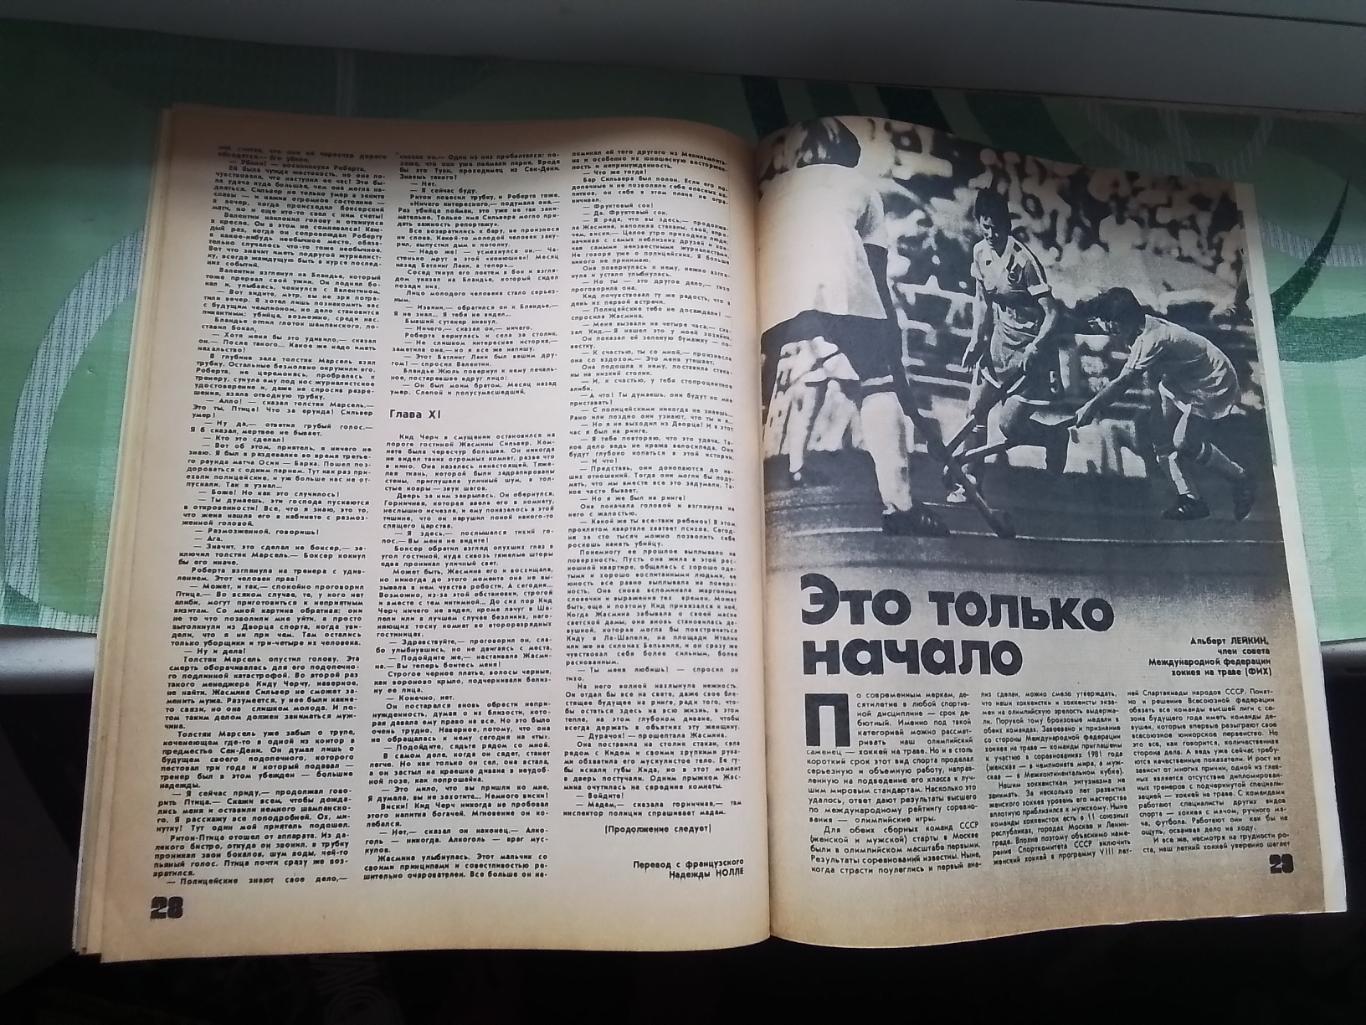 Журнал ФиС 1981 1 И Тузик тренер 2-й сборной и Крыльев О форварда забивающих гол 4